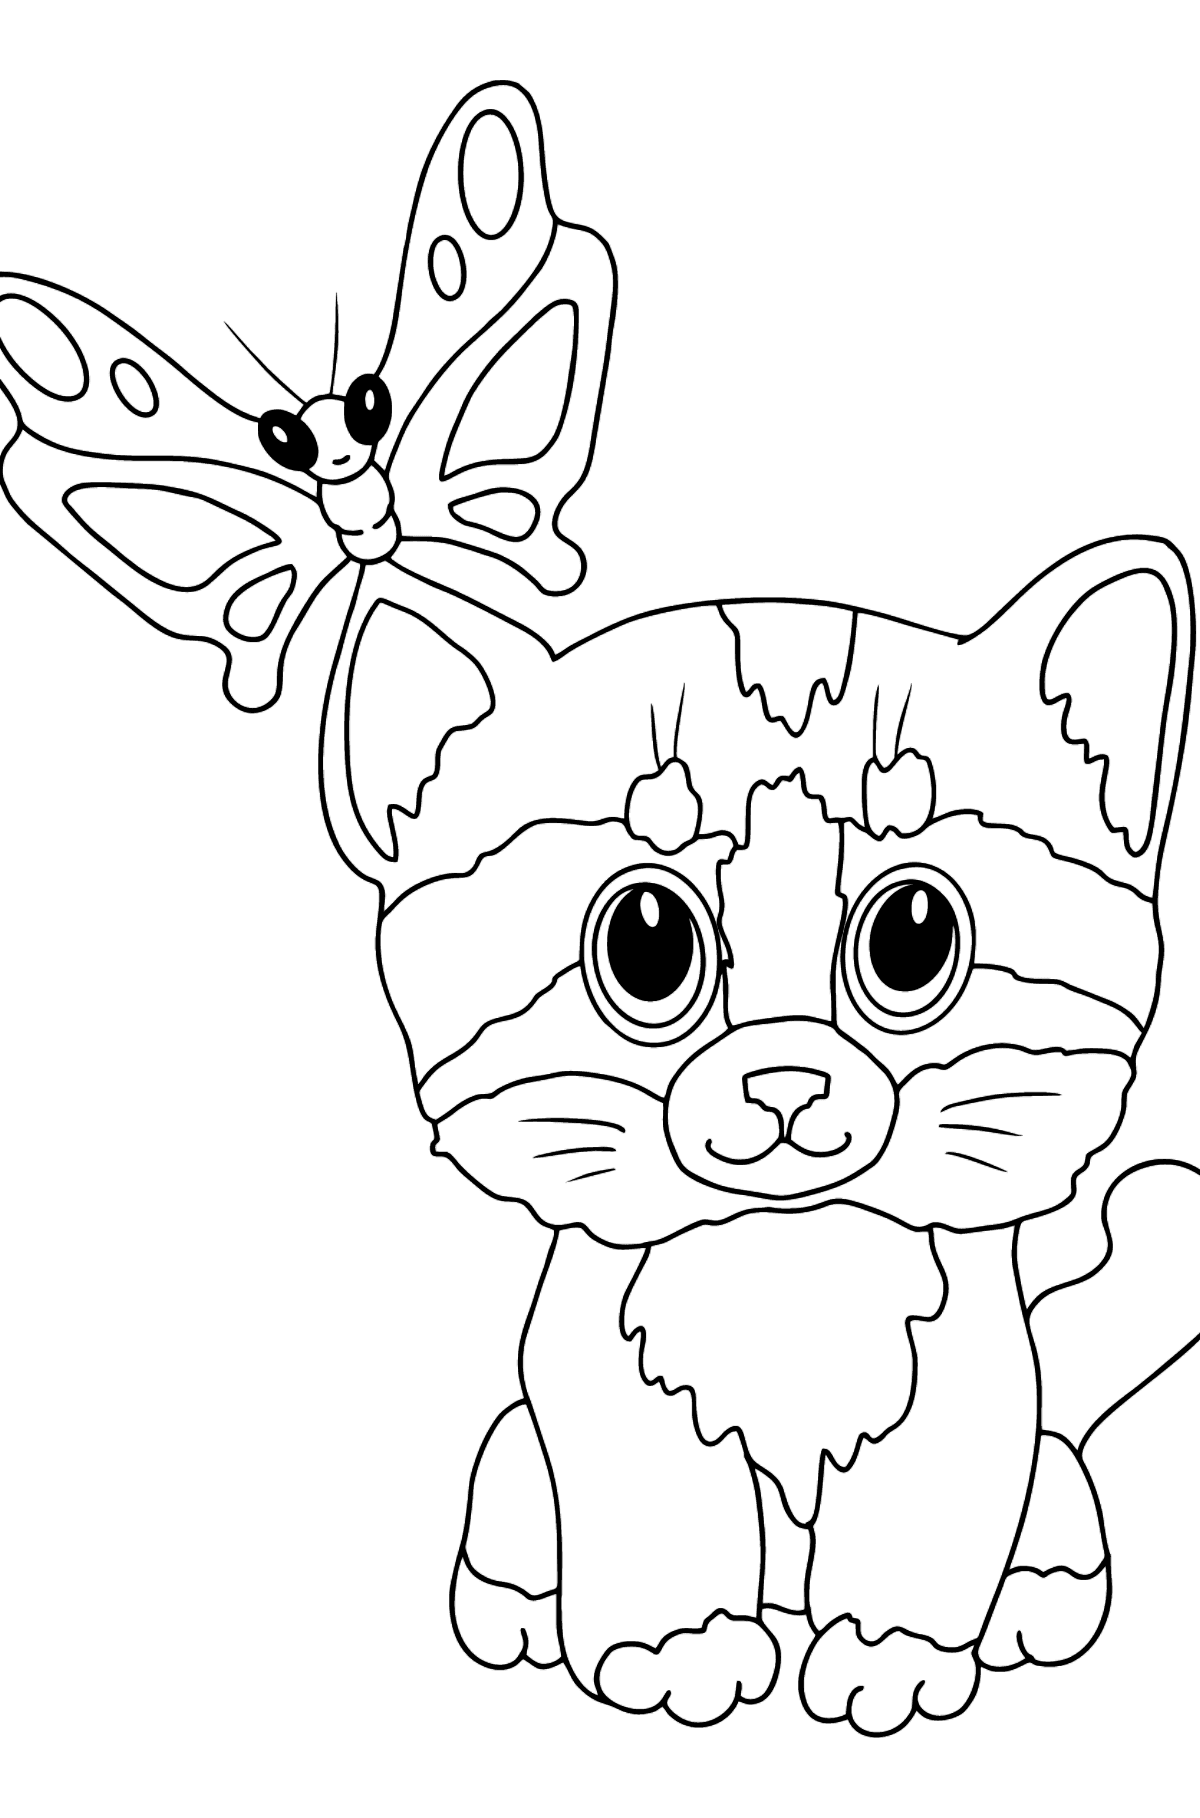 Ausmalbild Katzen und Schmetterling - Malvorlagen für Kinder